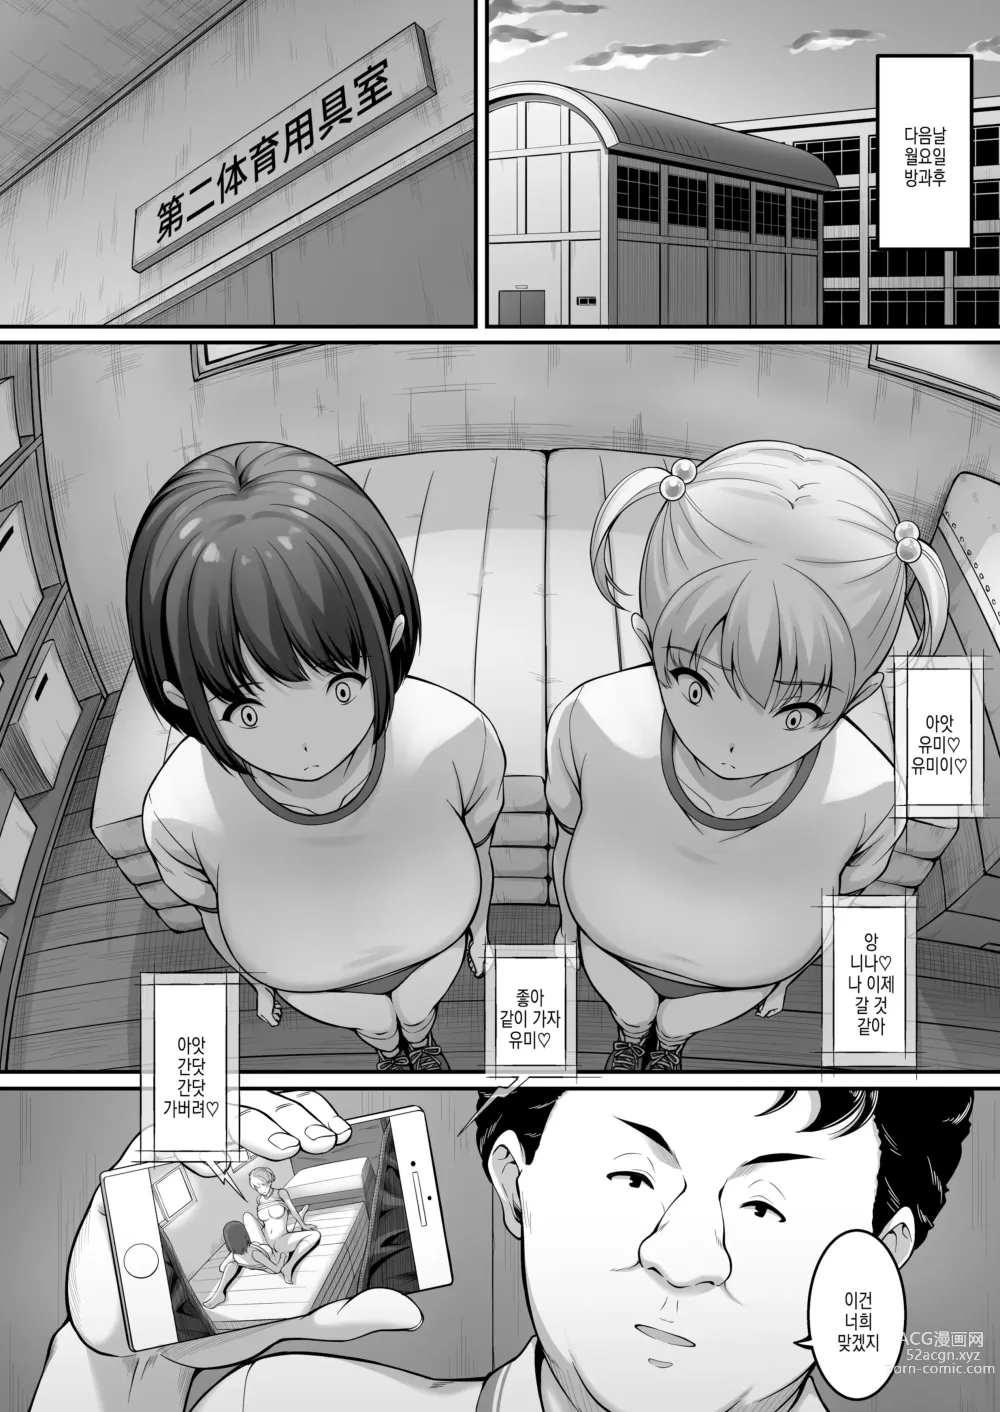 Page 16 of doujinshi 여자 배구부 JK, 네토라레 당하다 2